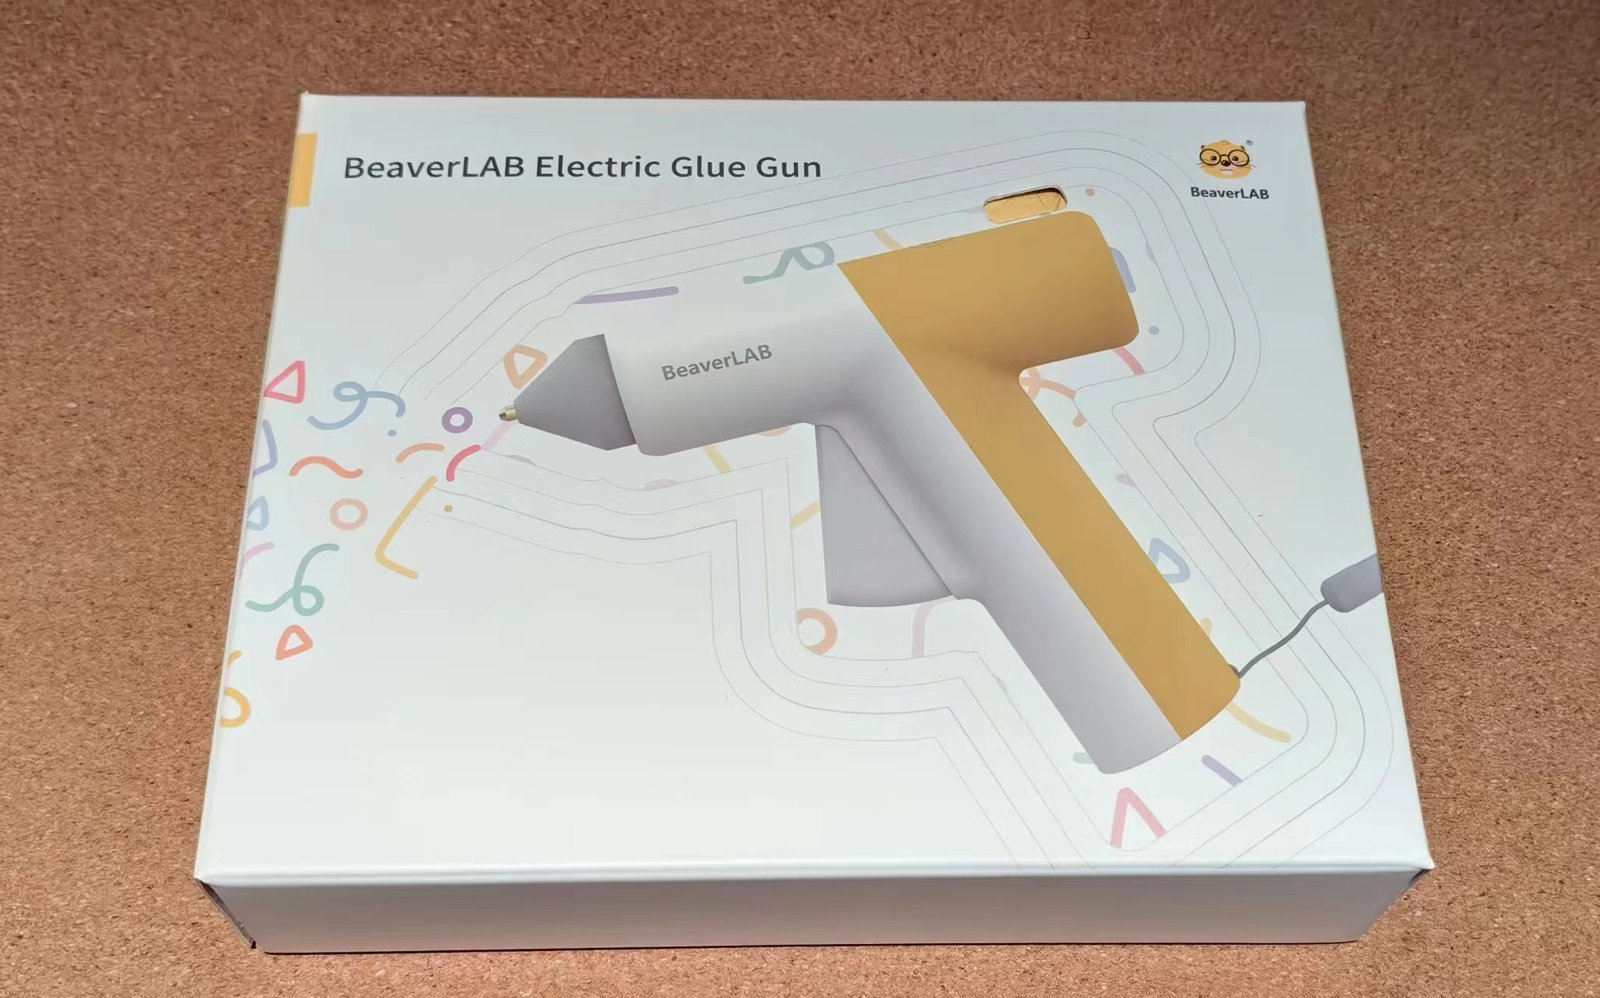 beaverlab glue gun package